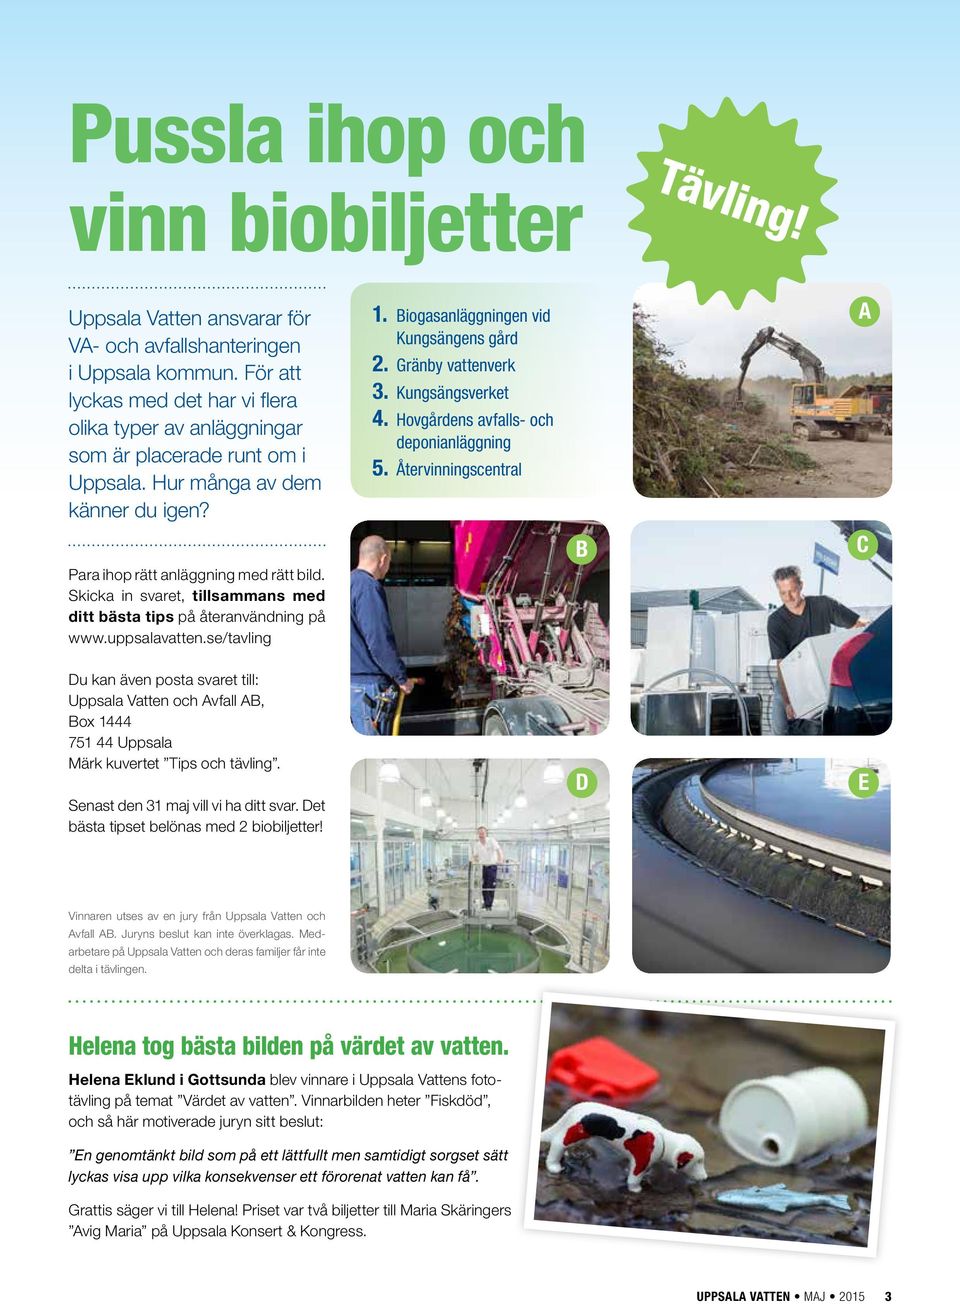 Skicka in svaret, tillsammans med ditt bästa tips på åter användning på www.uppsalavatten.se/tavling 1. Biogasanläggningen vid Kungsängens gård 2. Gränby vattenverk 3. Kungsängsverket 4.